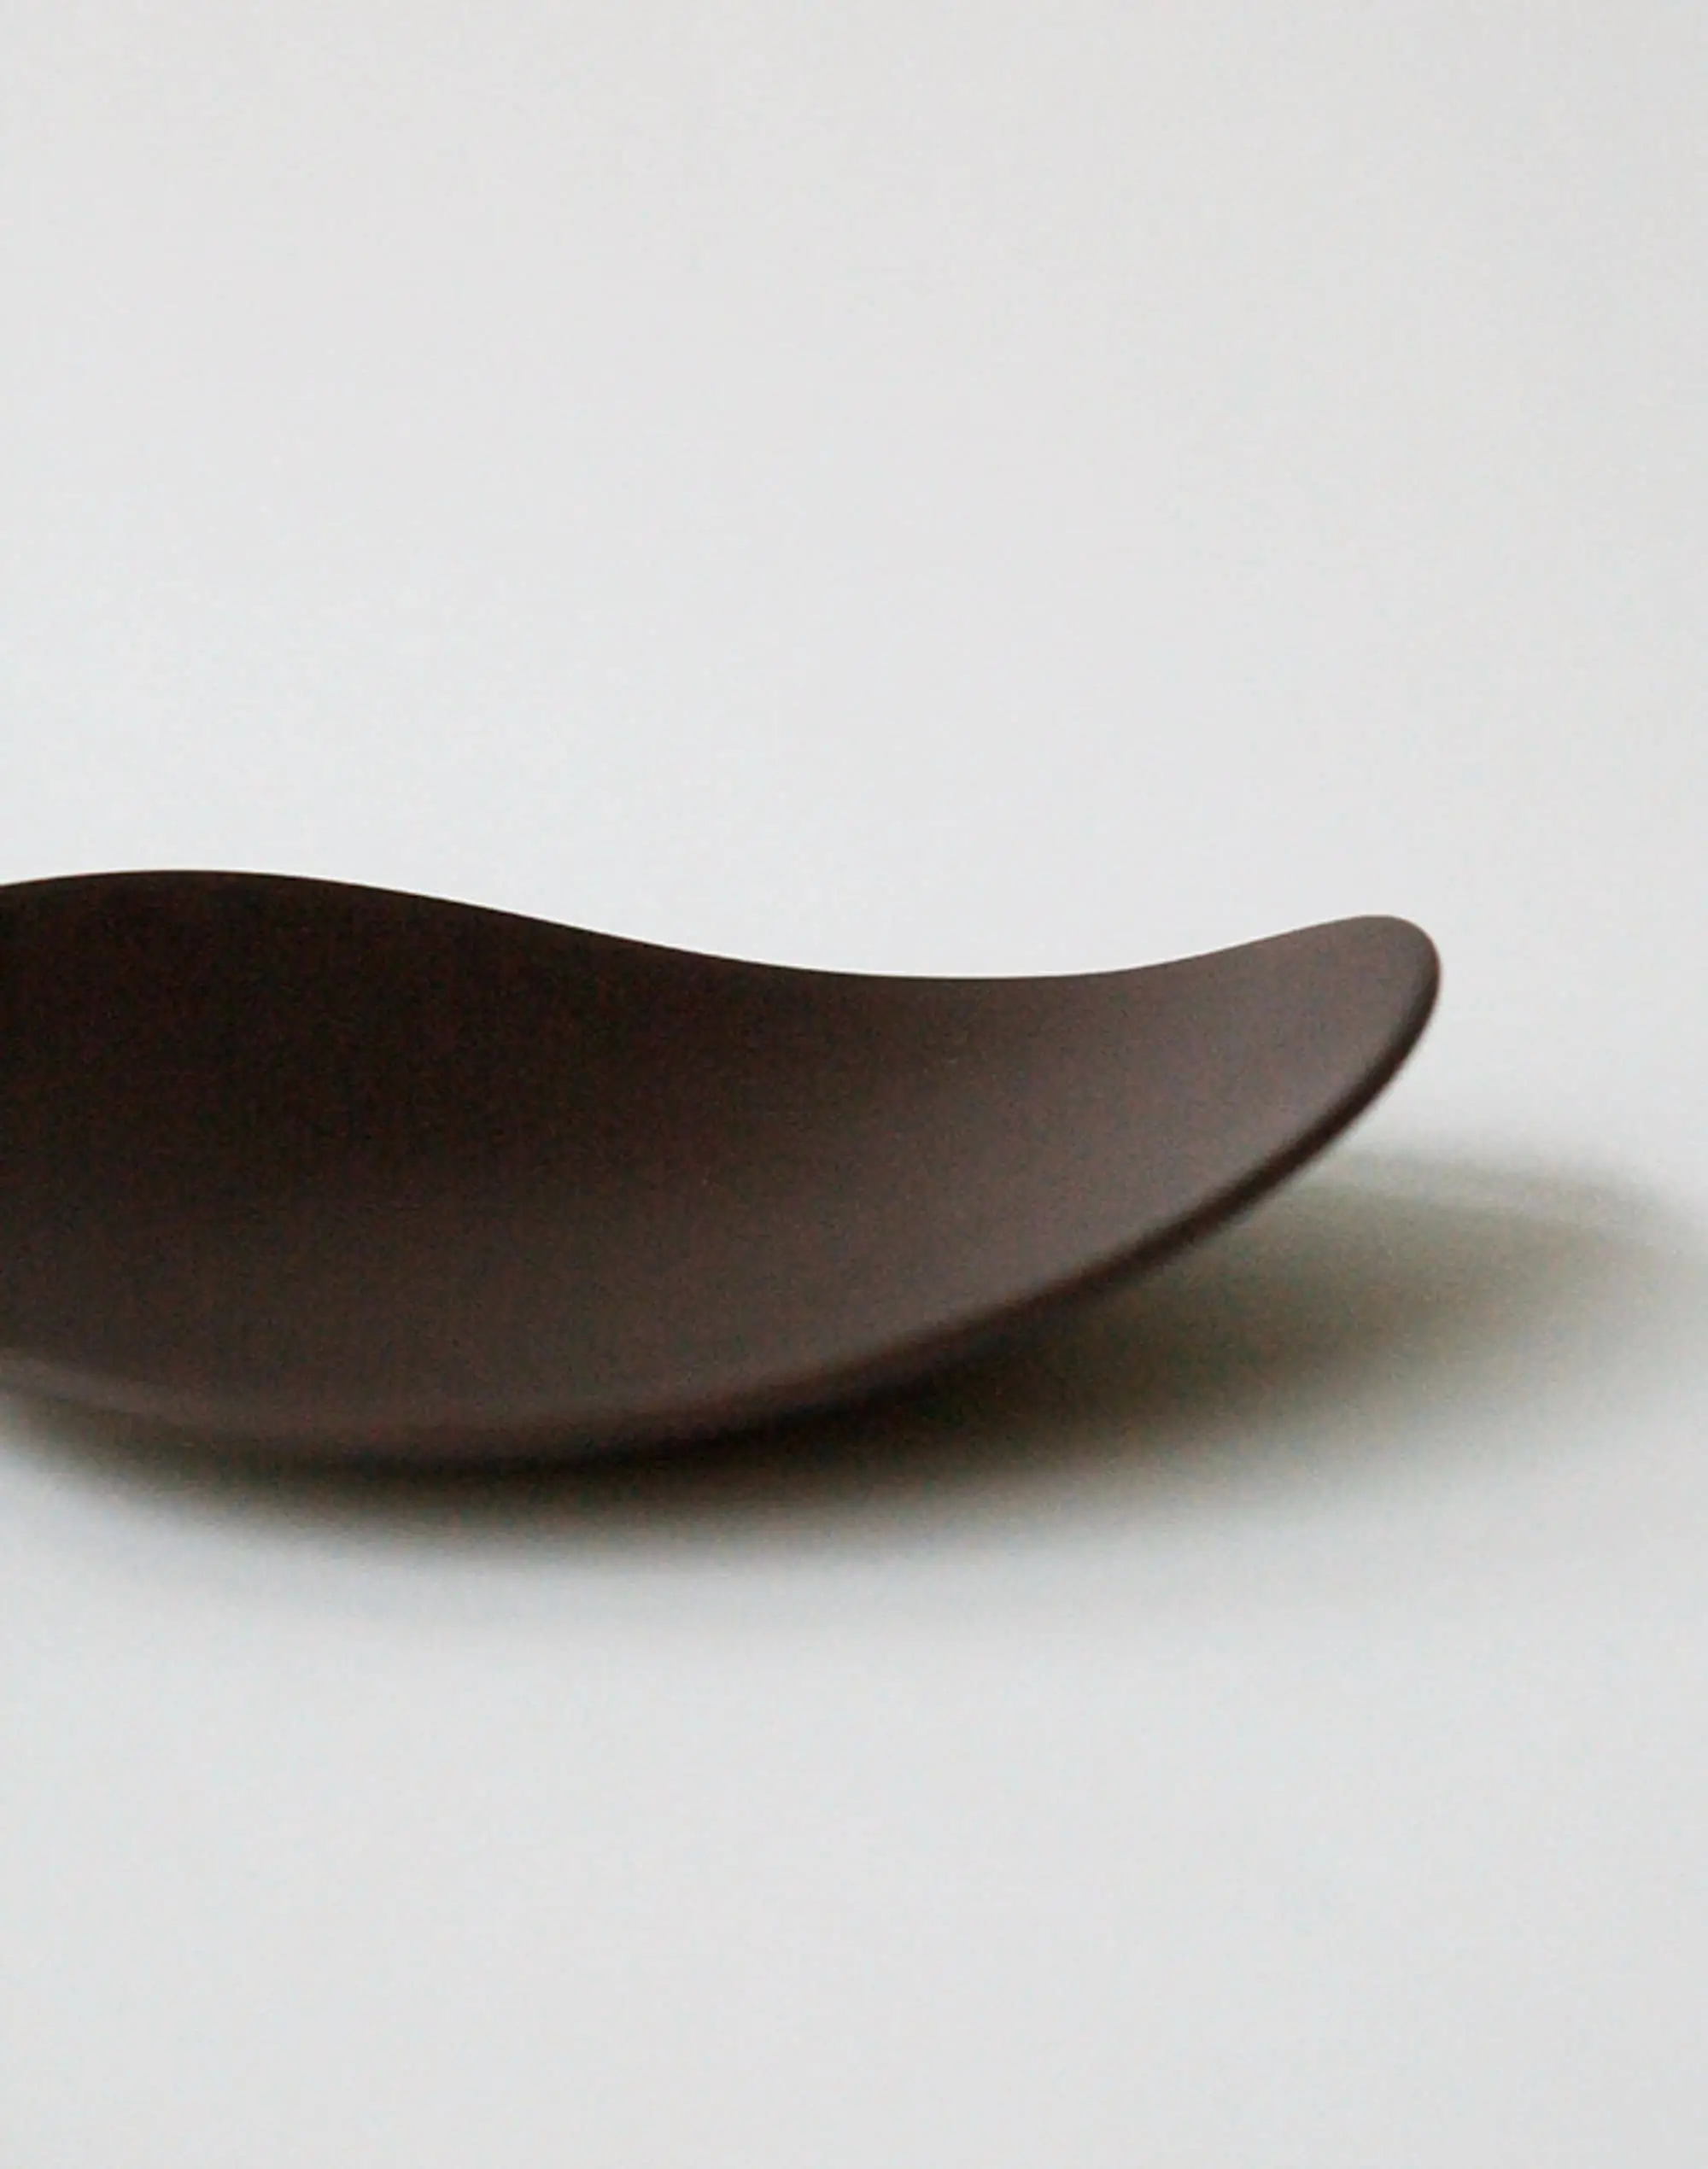 NR Ceramics HIN Pebble Plate S Brown 6